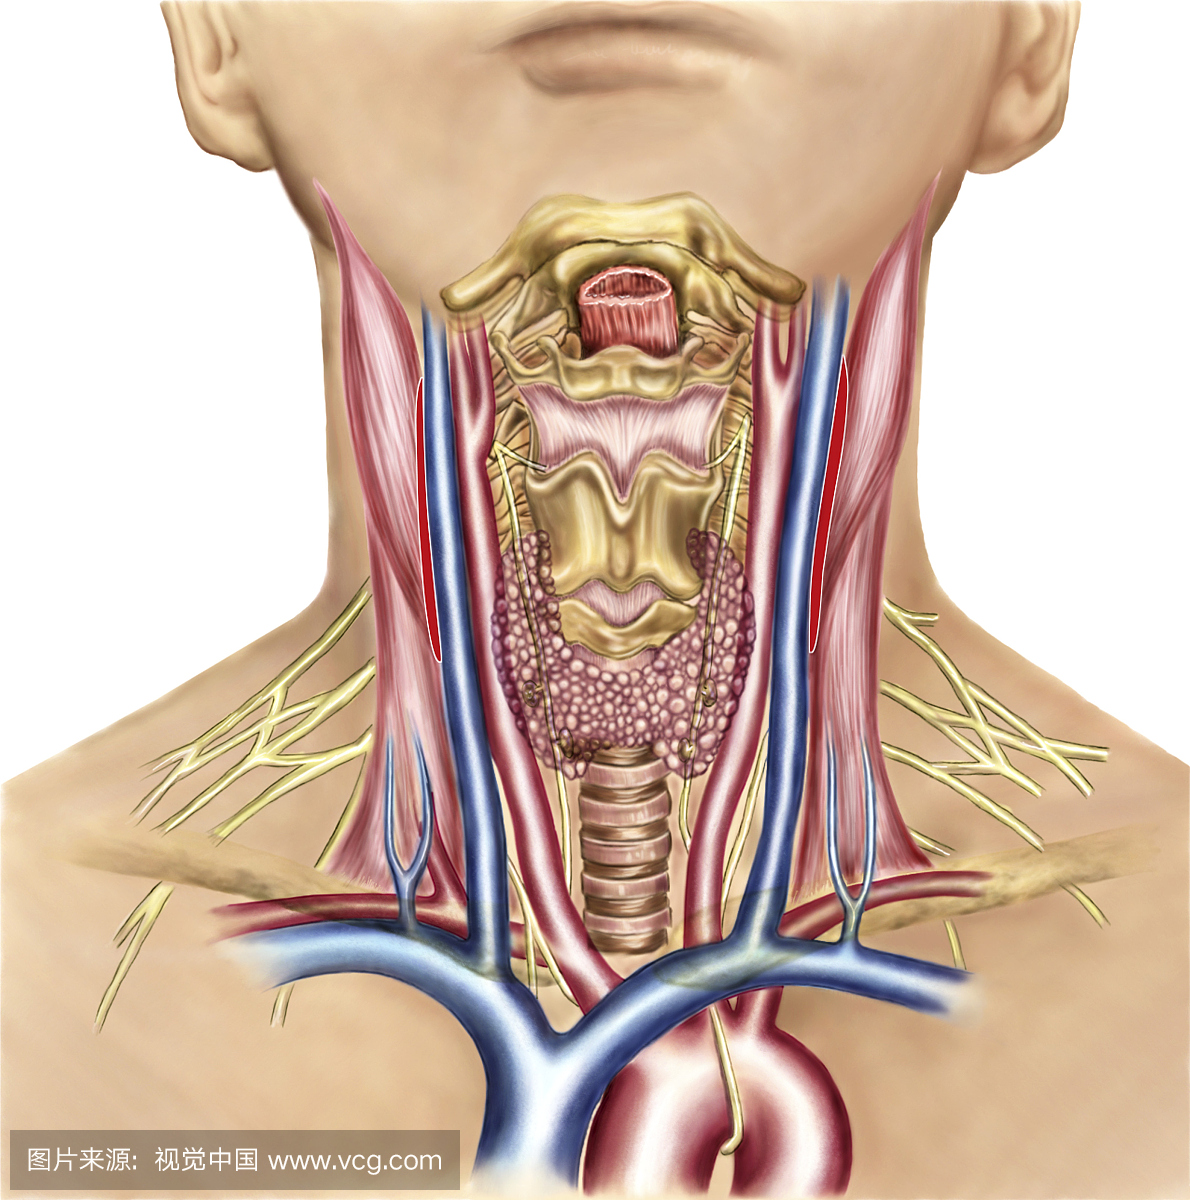 颈部解剖显示咽部区域和甲状腺,甲状旁腺的动